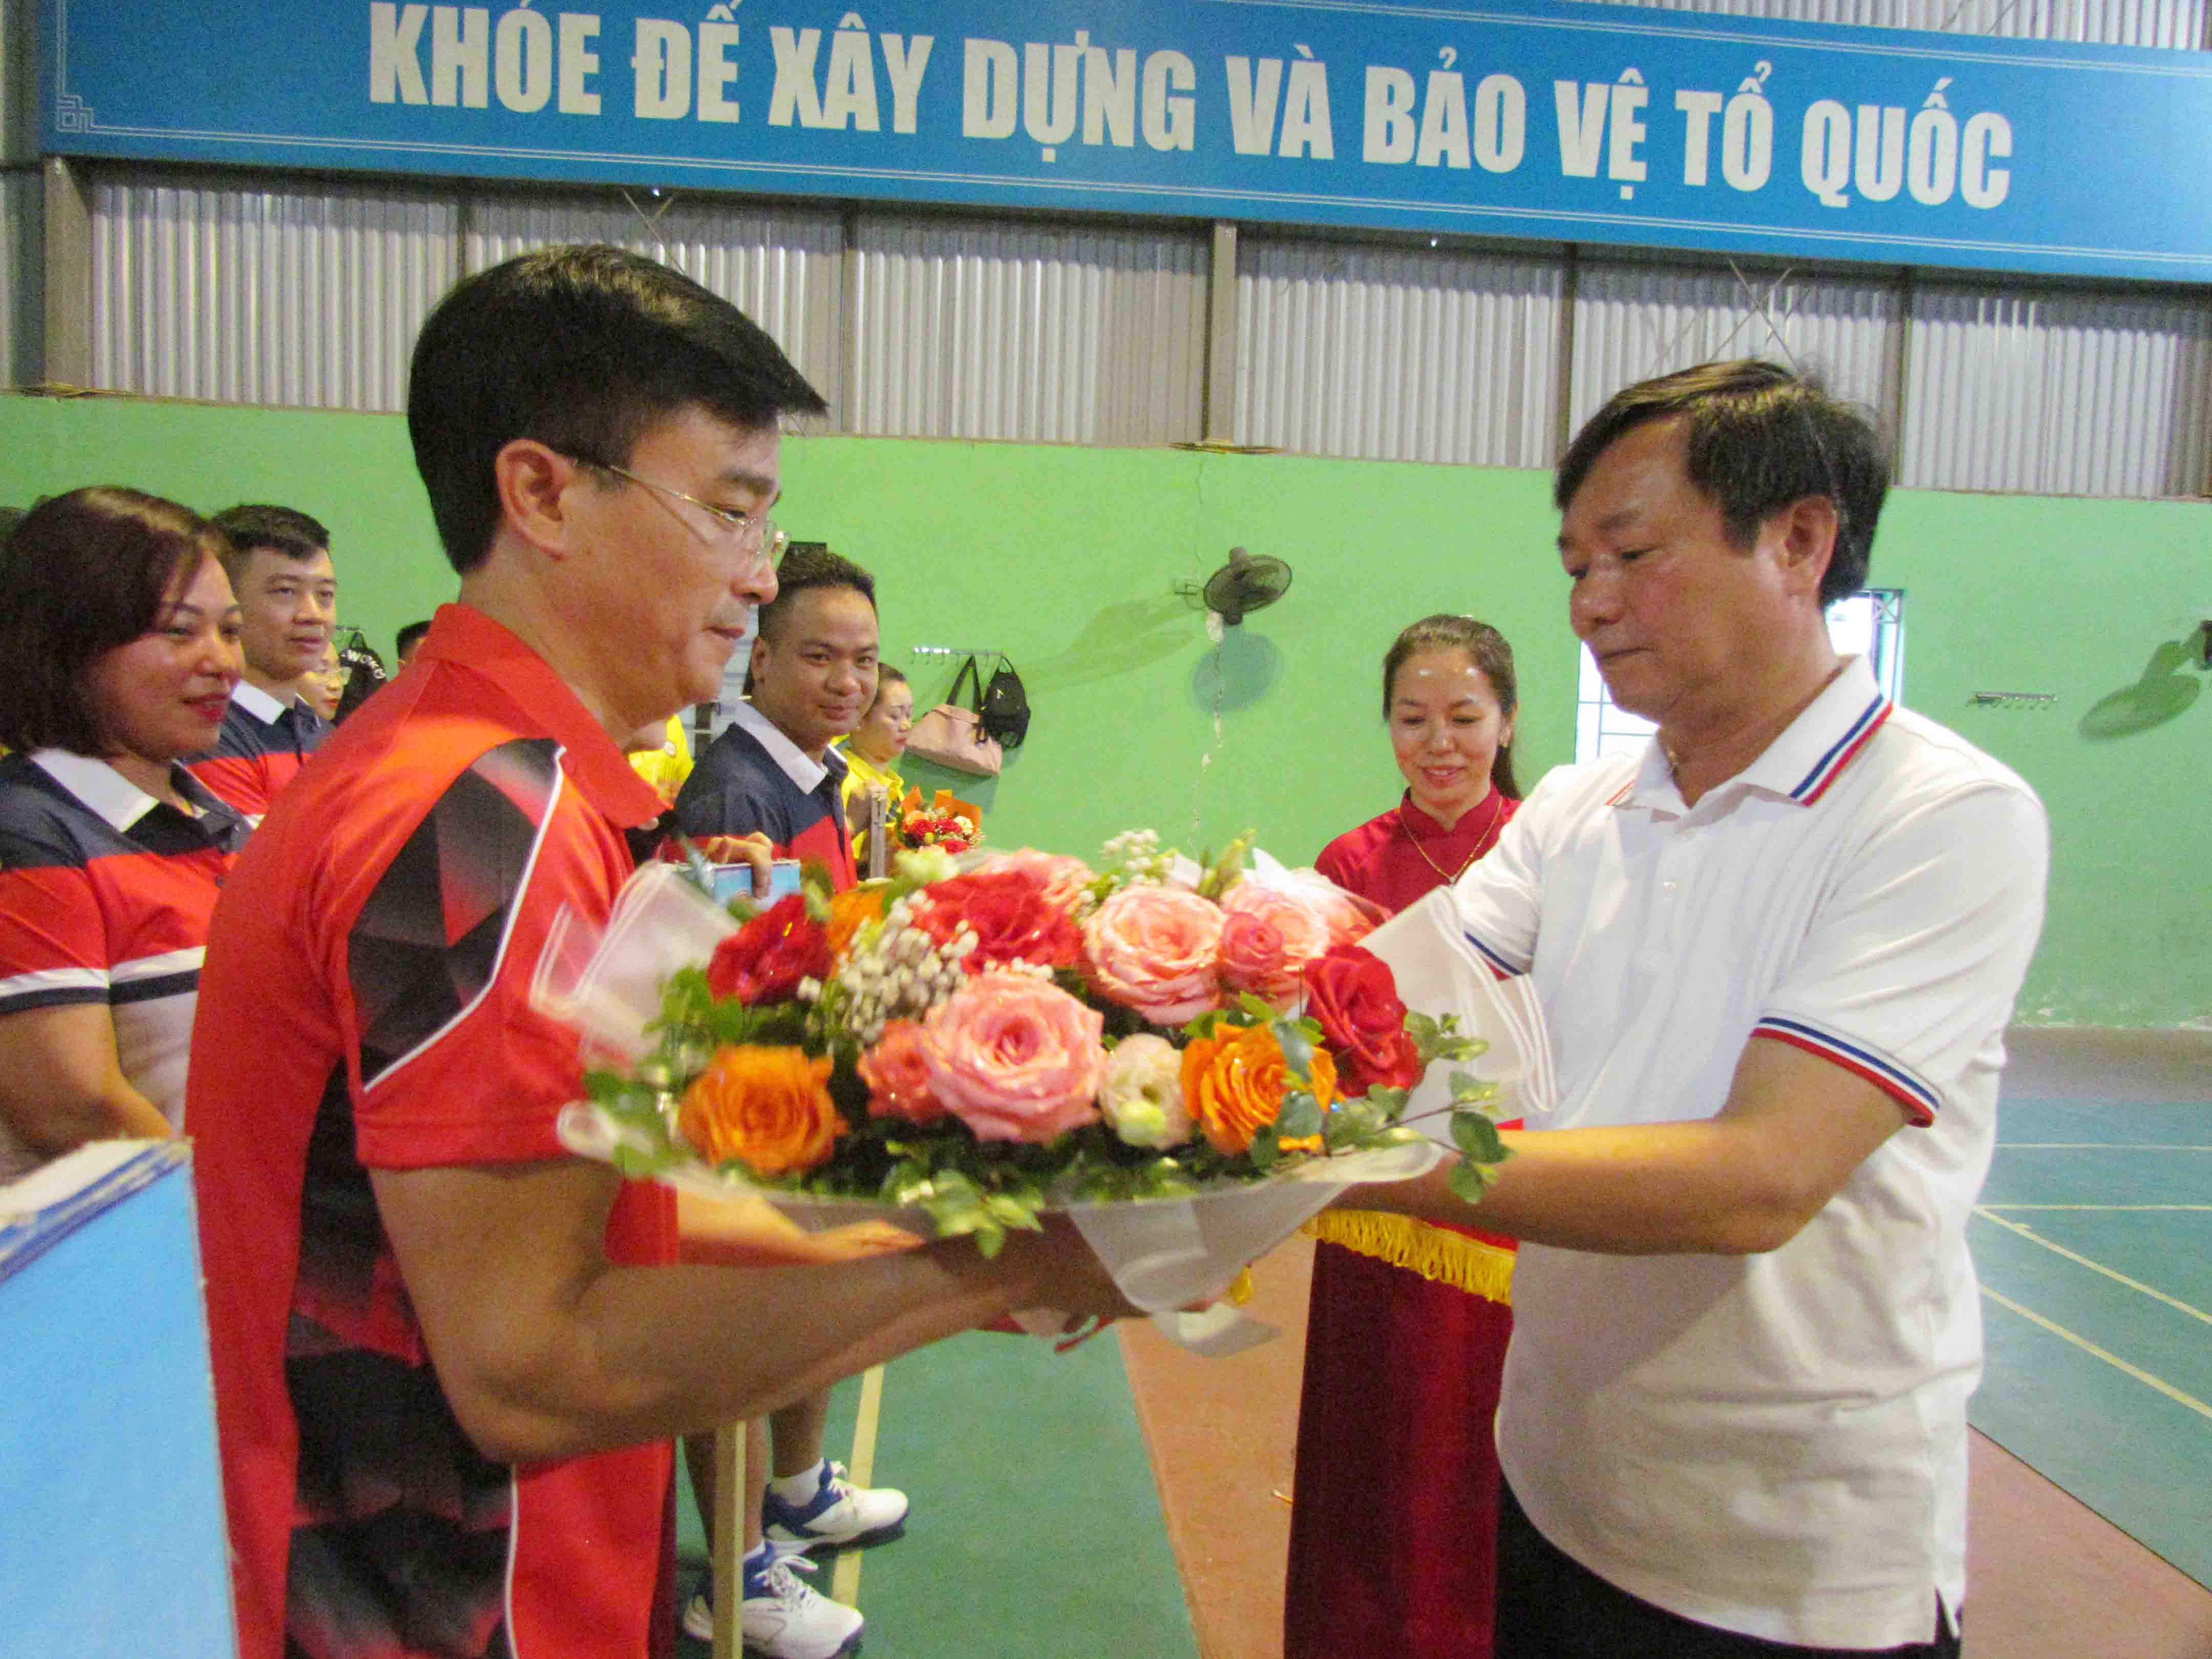 Đồng chí Nguyễn Văn Luận – Giám đốc Ngân hàng Nhà nước chi nhánh tỉnh, Trưởng Ban chỉ đạo hội thao trao hoa cho các đoàn về dự.